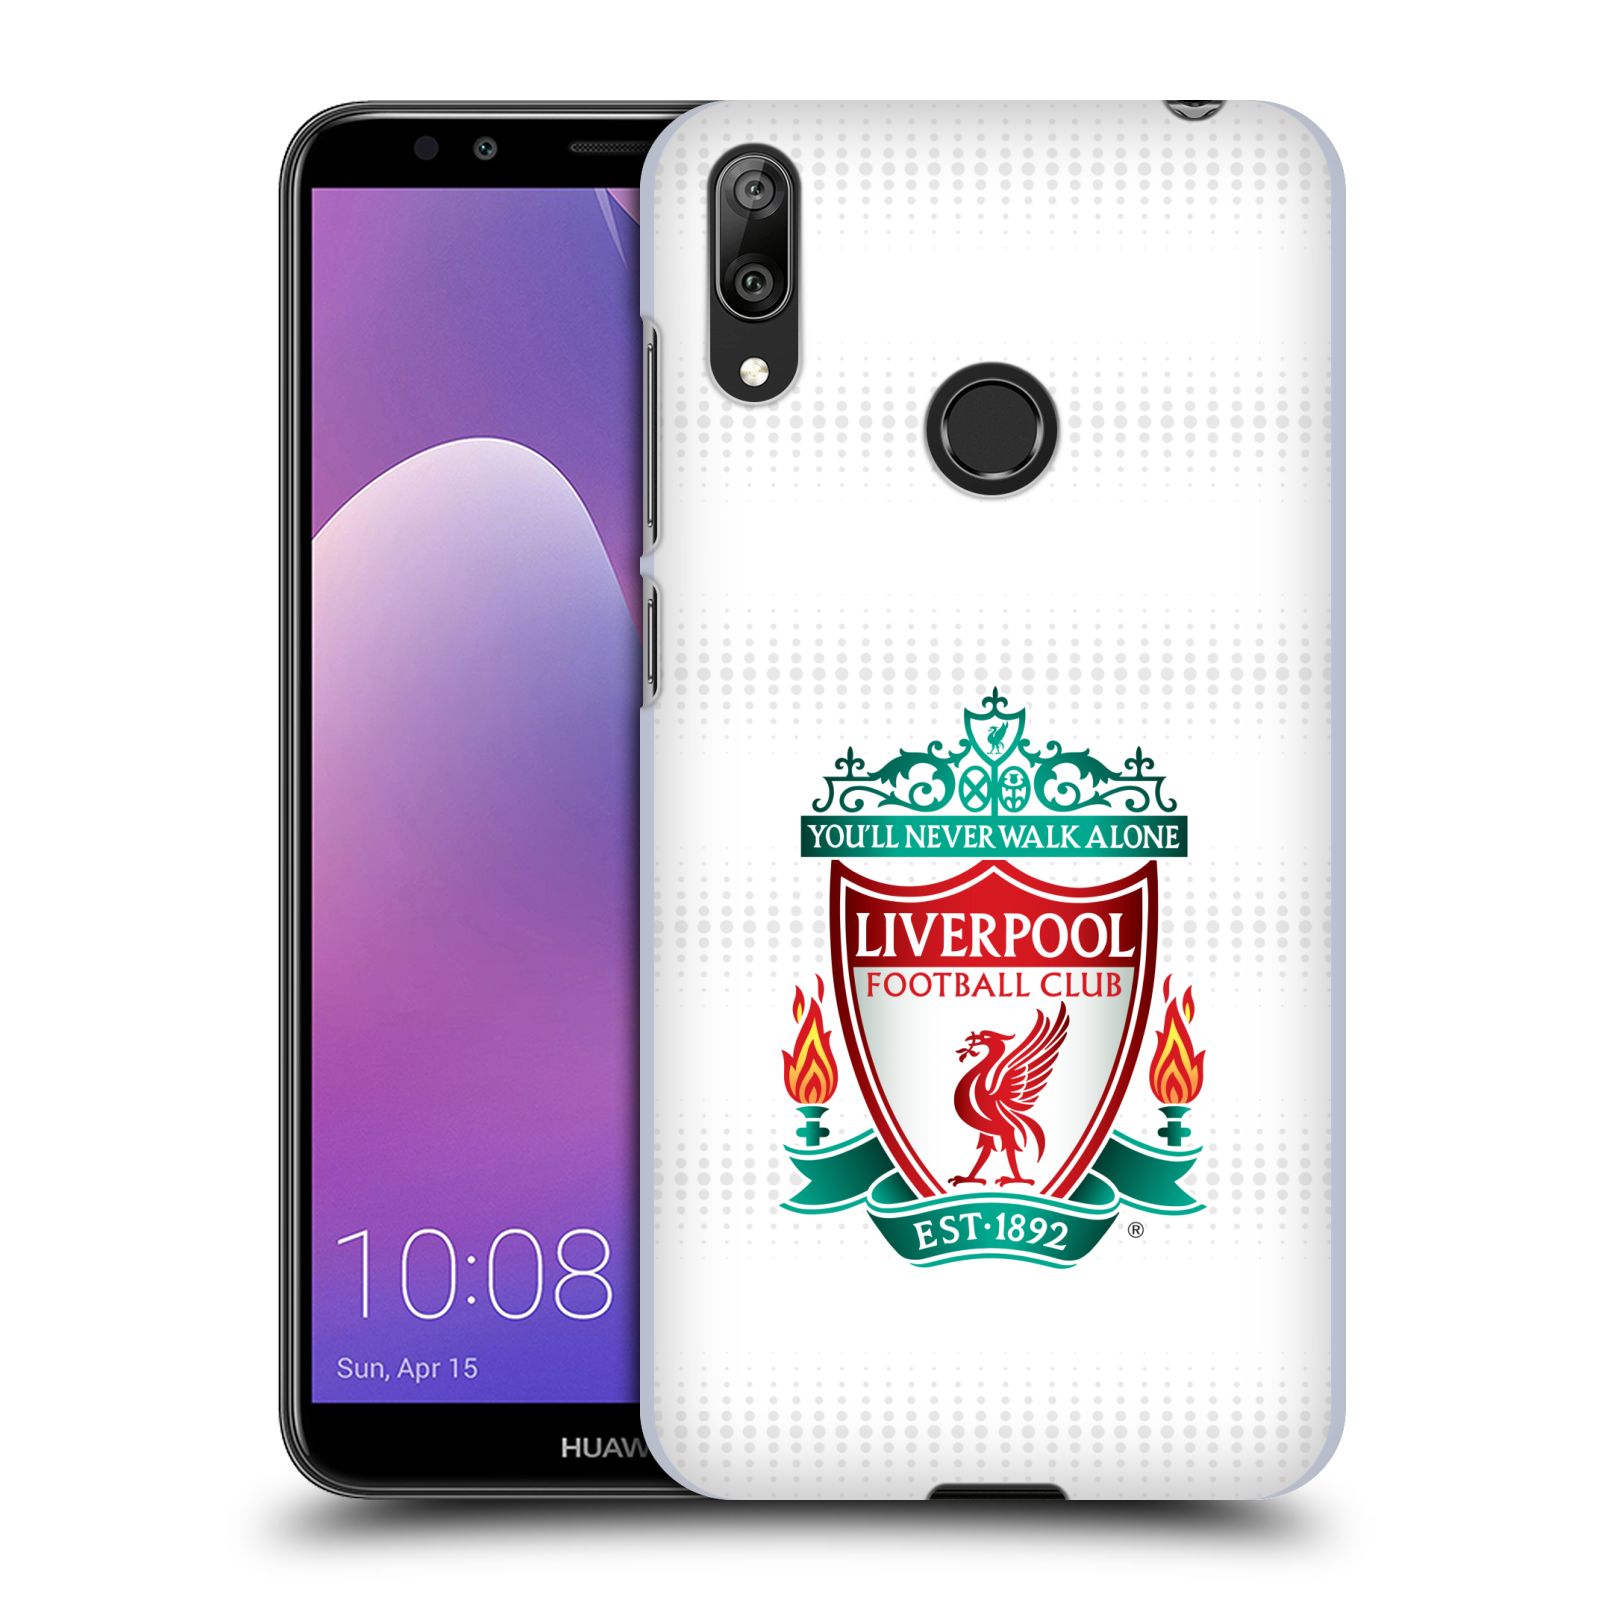 Pouzdro na mobil Huawei Y7 2019 - Head Case - Fotbalový klub Liverpool barevný znak bílé pozadí s tečkami